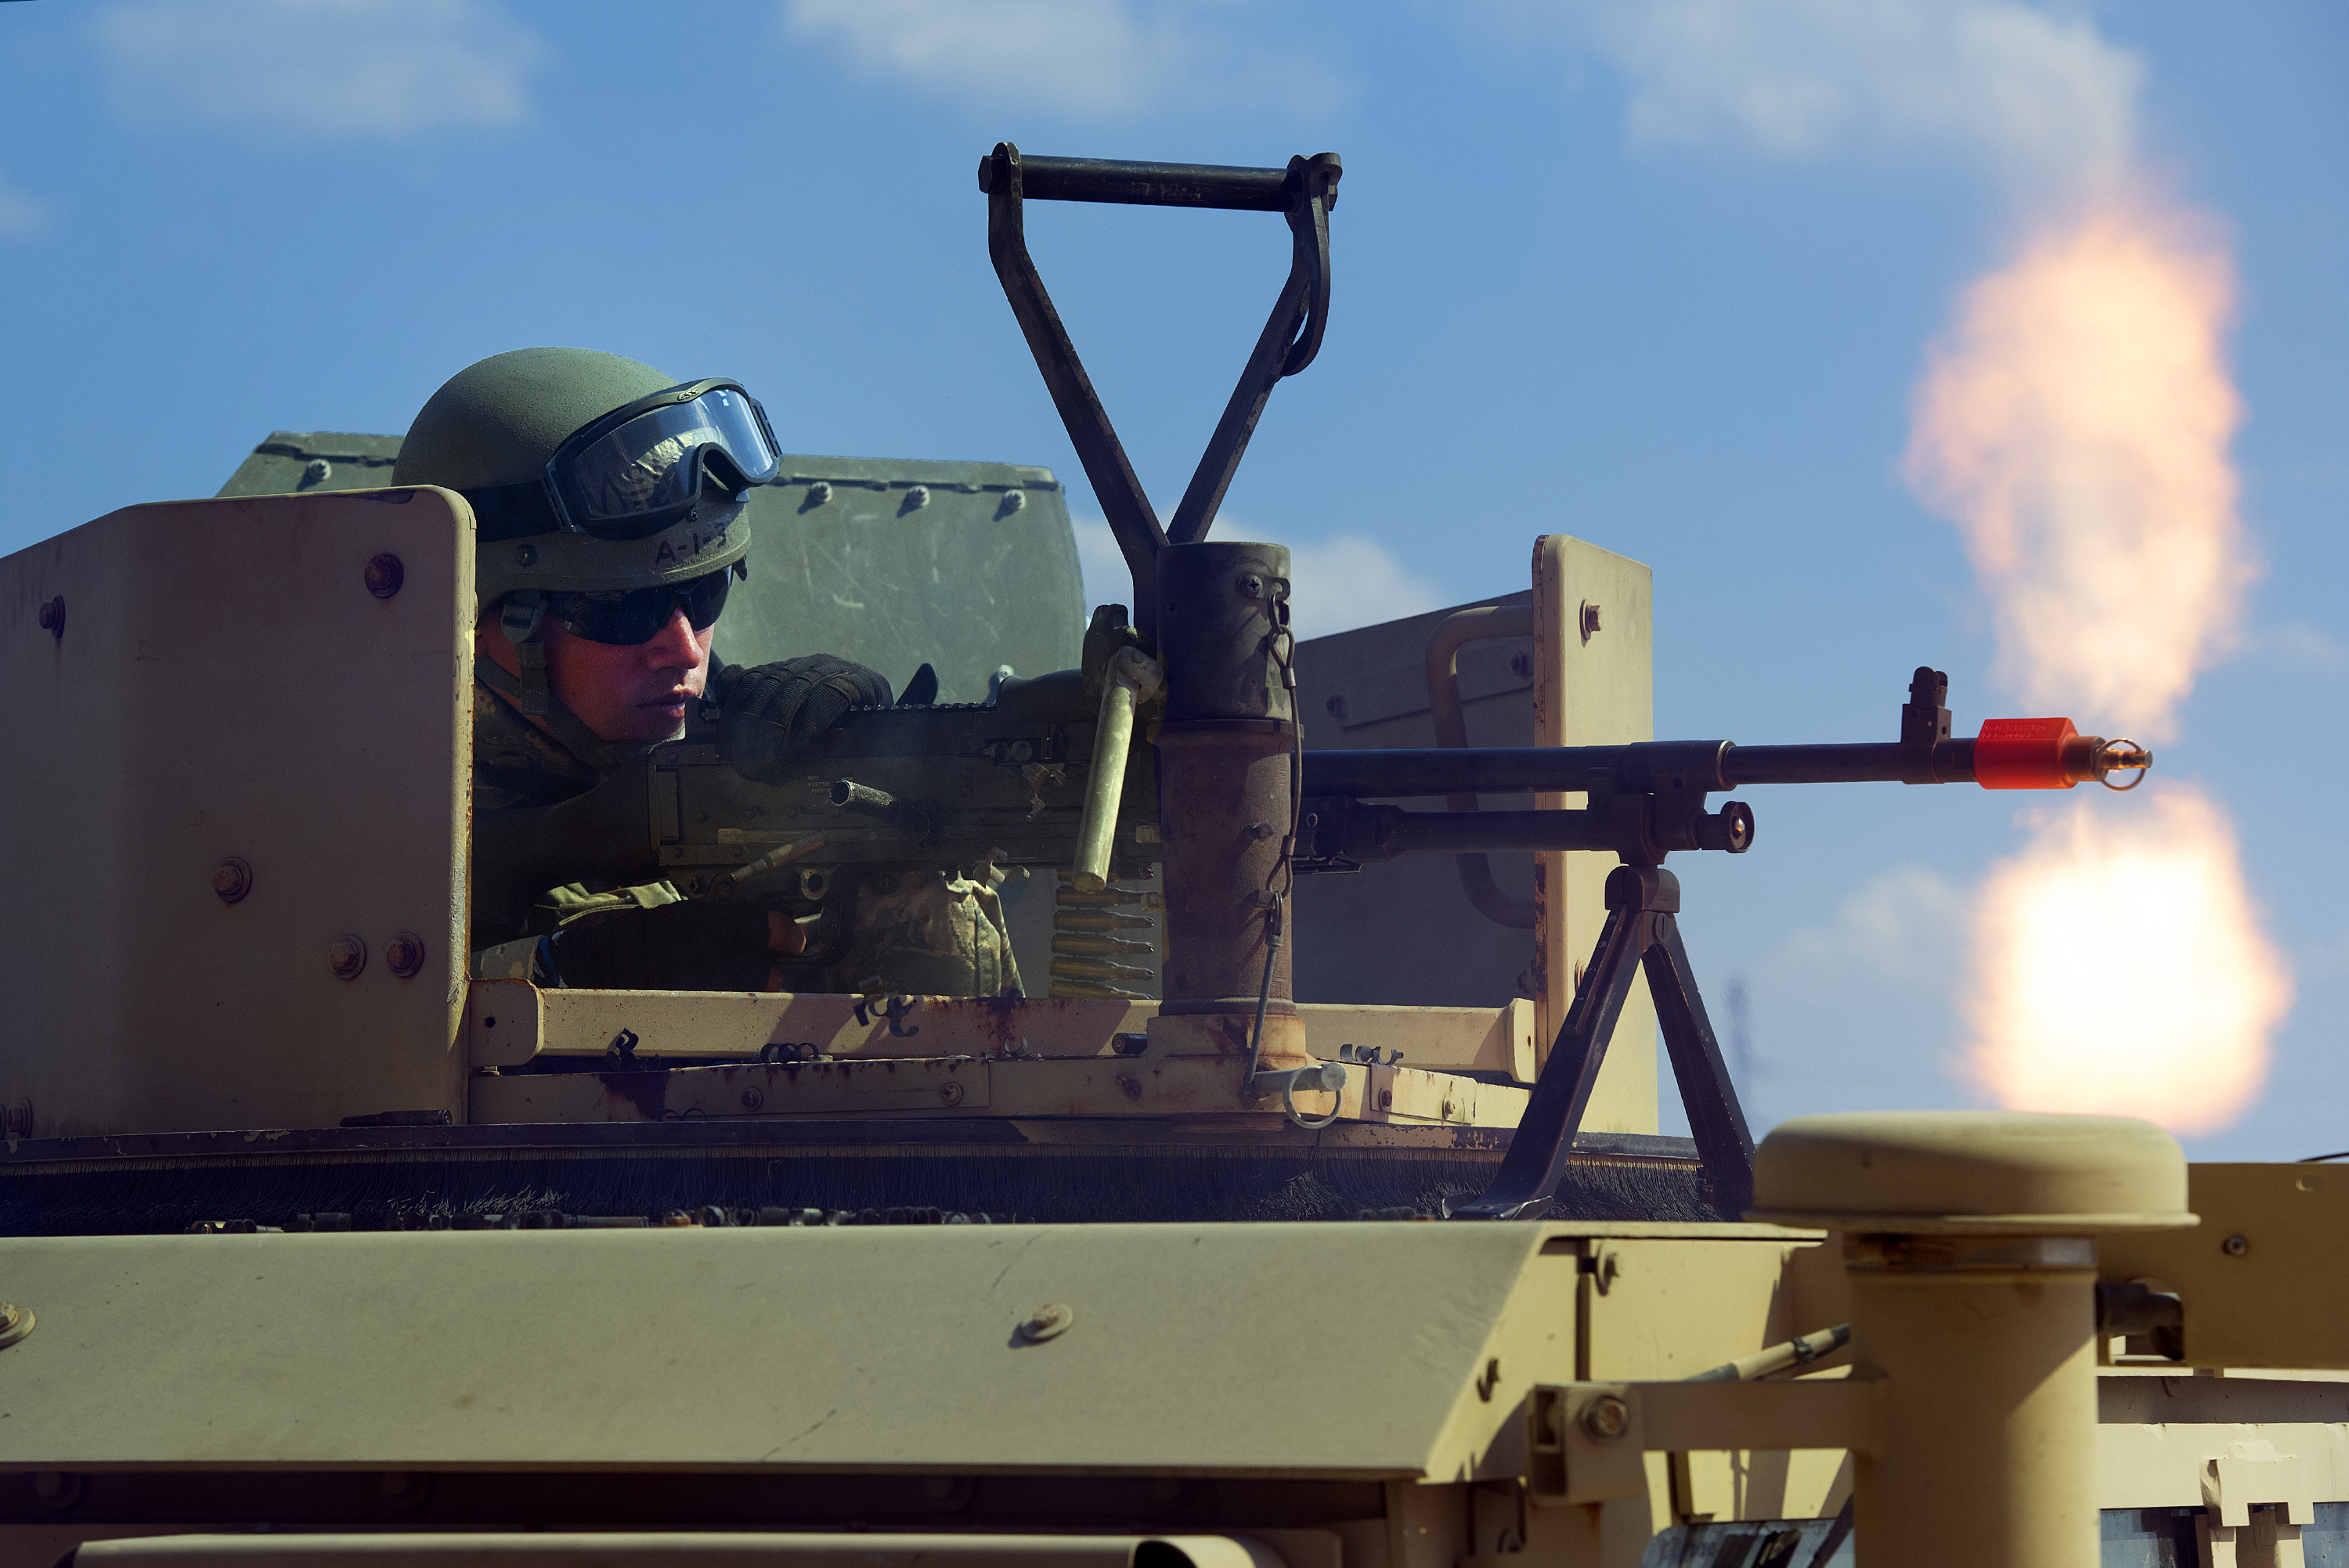 M240 light machine gun photo